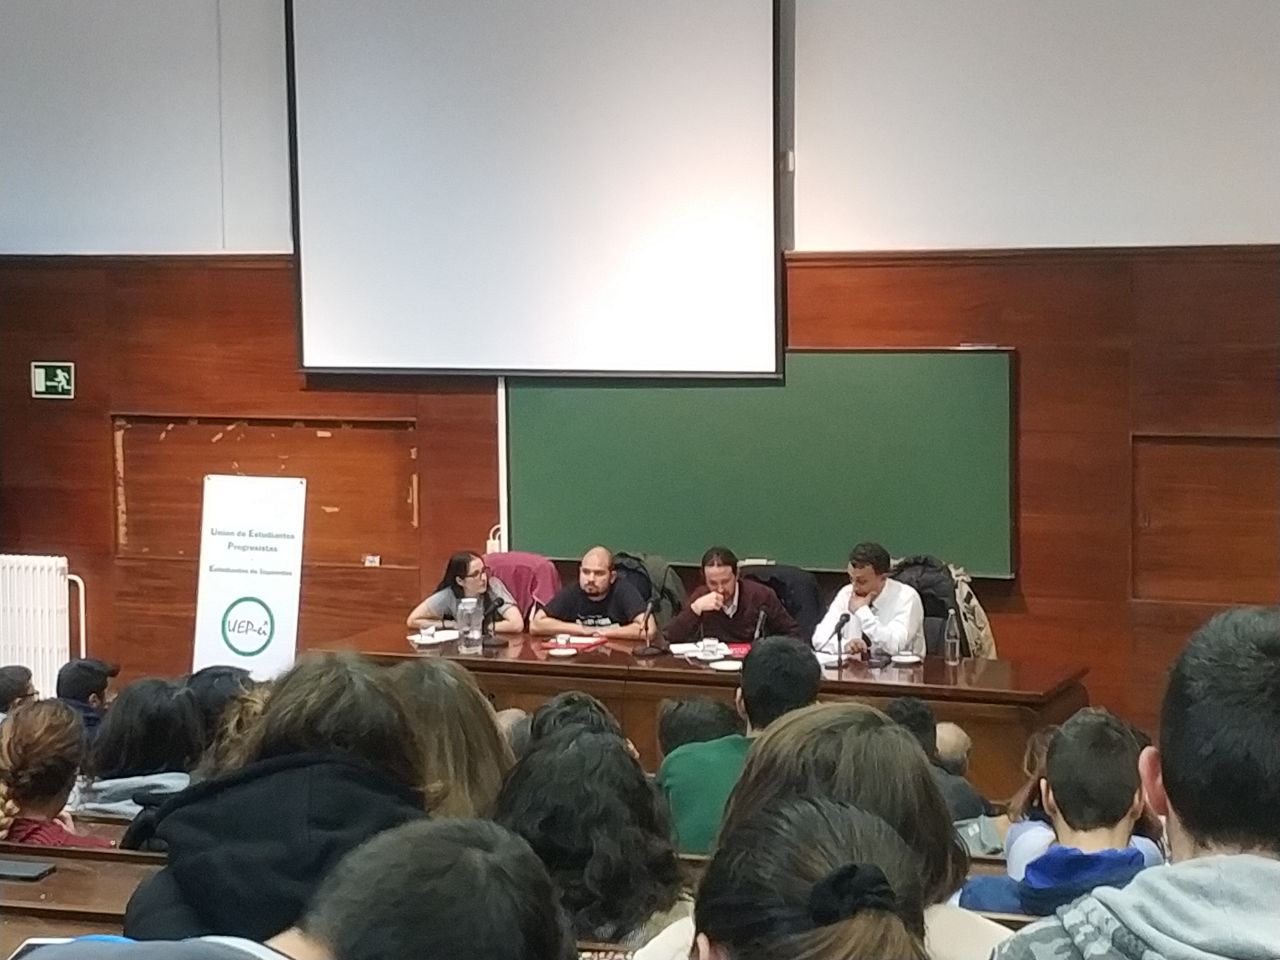 Iglesias en la Facultad de Derecho de la Complutense, durante la charla sobre antifascismo.